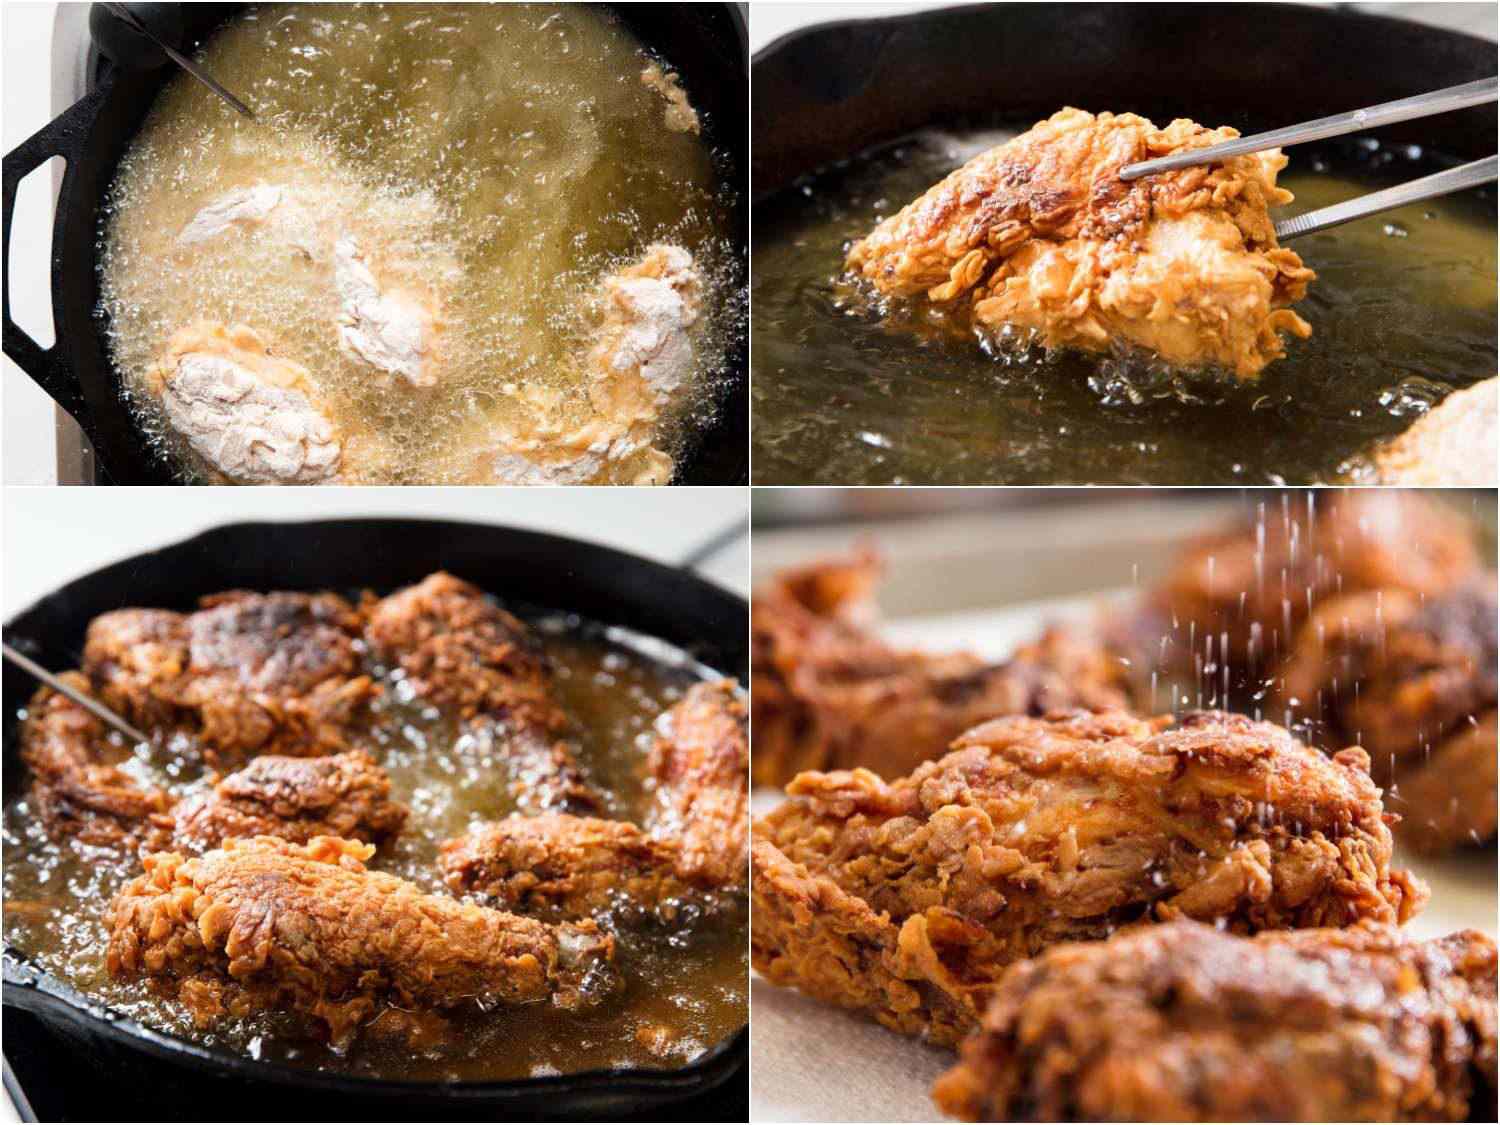 拼贴不同阶段的炸鸡:第一面在铸铁锅中煎，一面有面粉，用夹子翻鸡肉，鸡肉在另一面煎，撒盐在鸡肉上gydF4y2Ba